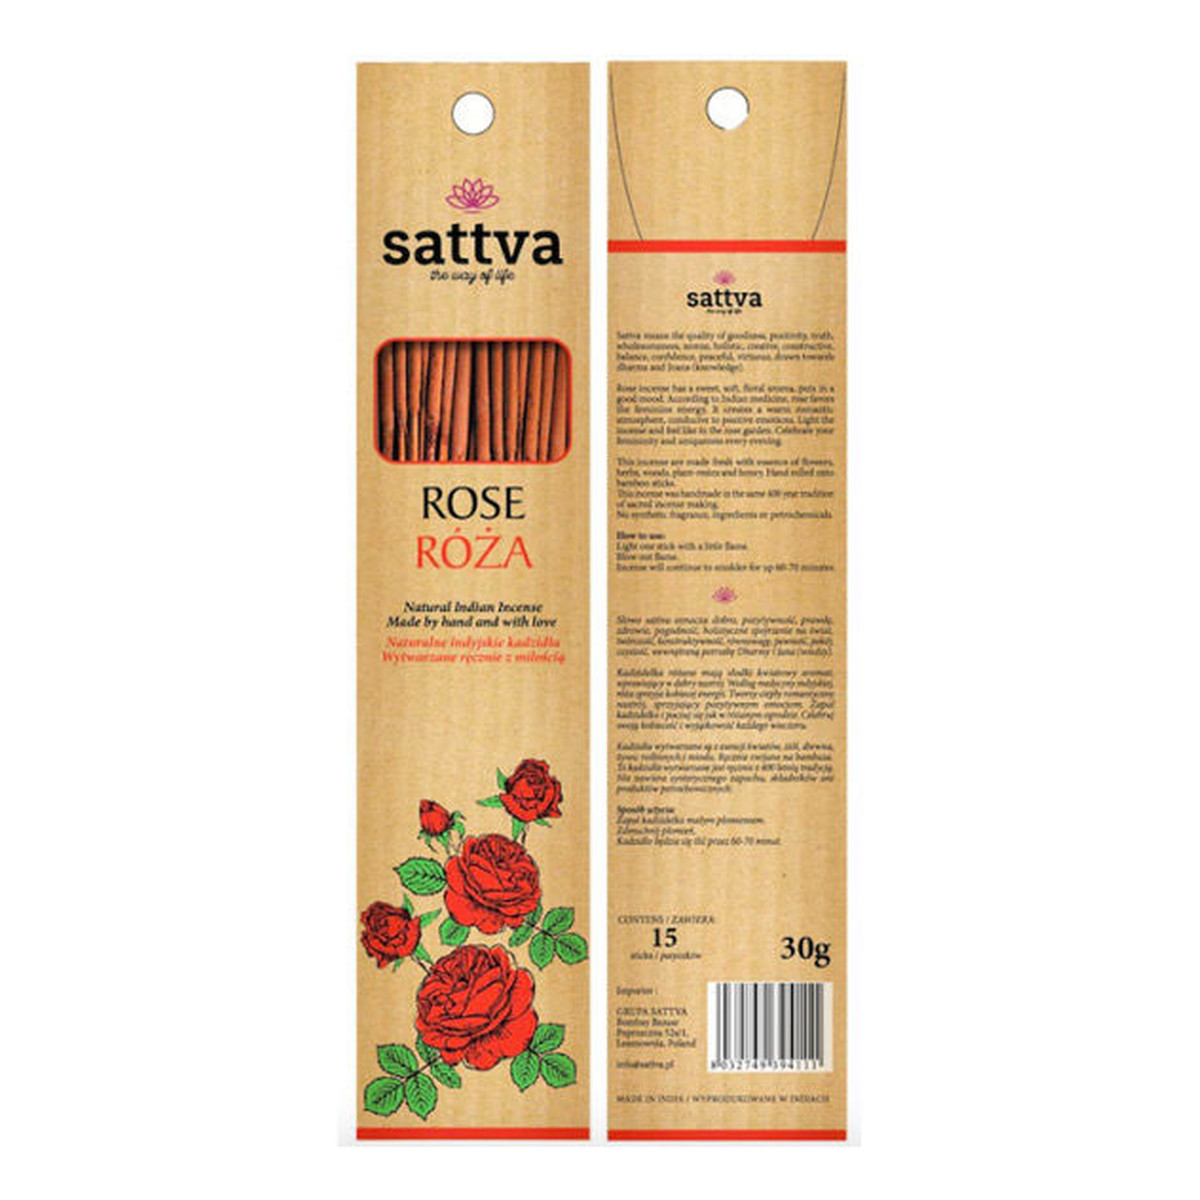 Sattva Naturalne Indyjskie Kadzidła Wytwarzane Ręcznie Z Miłością Róża 15szt 30g